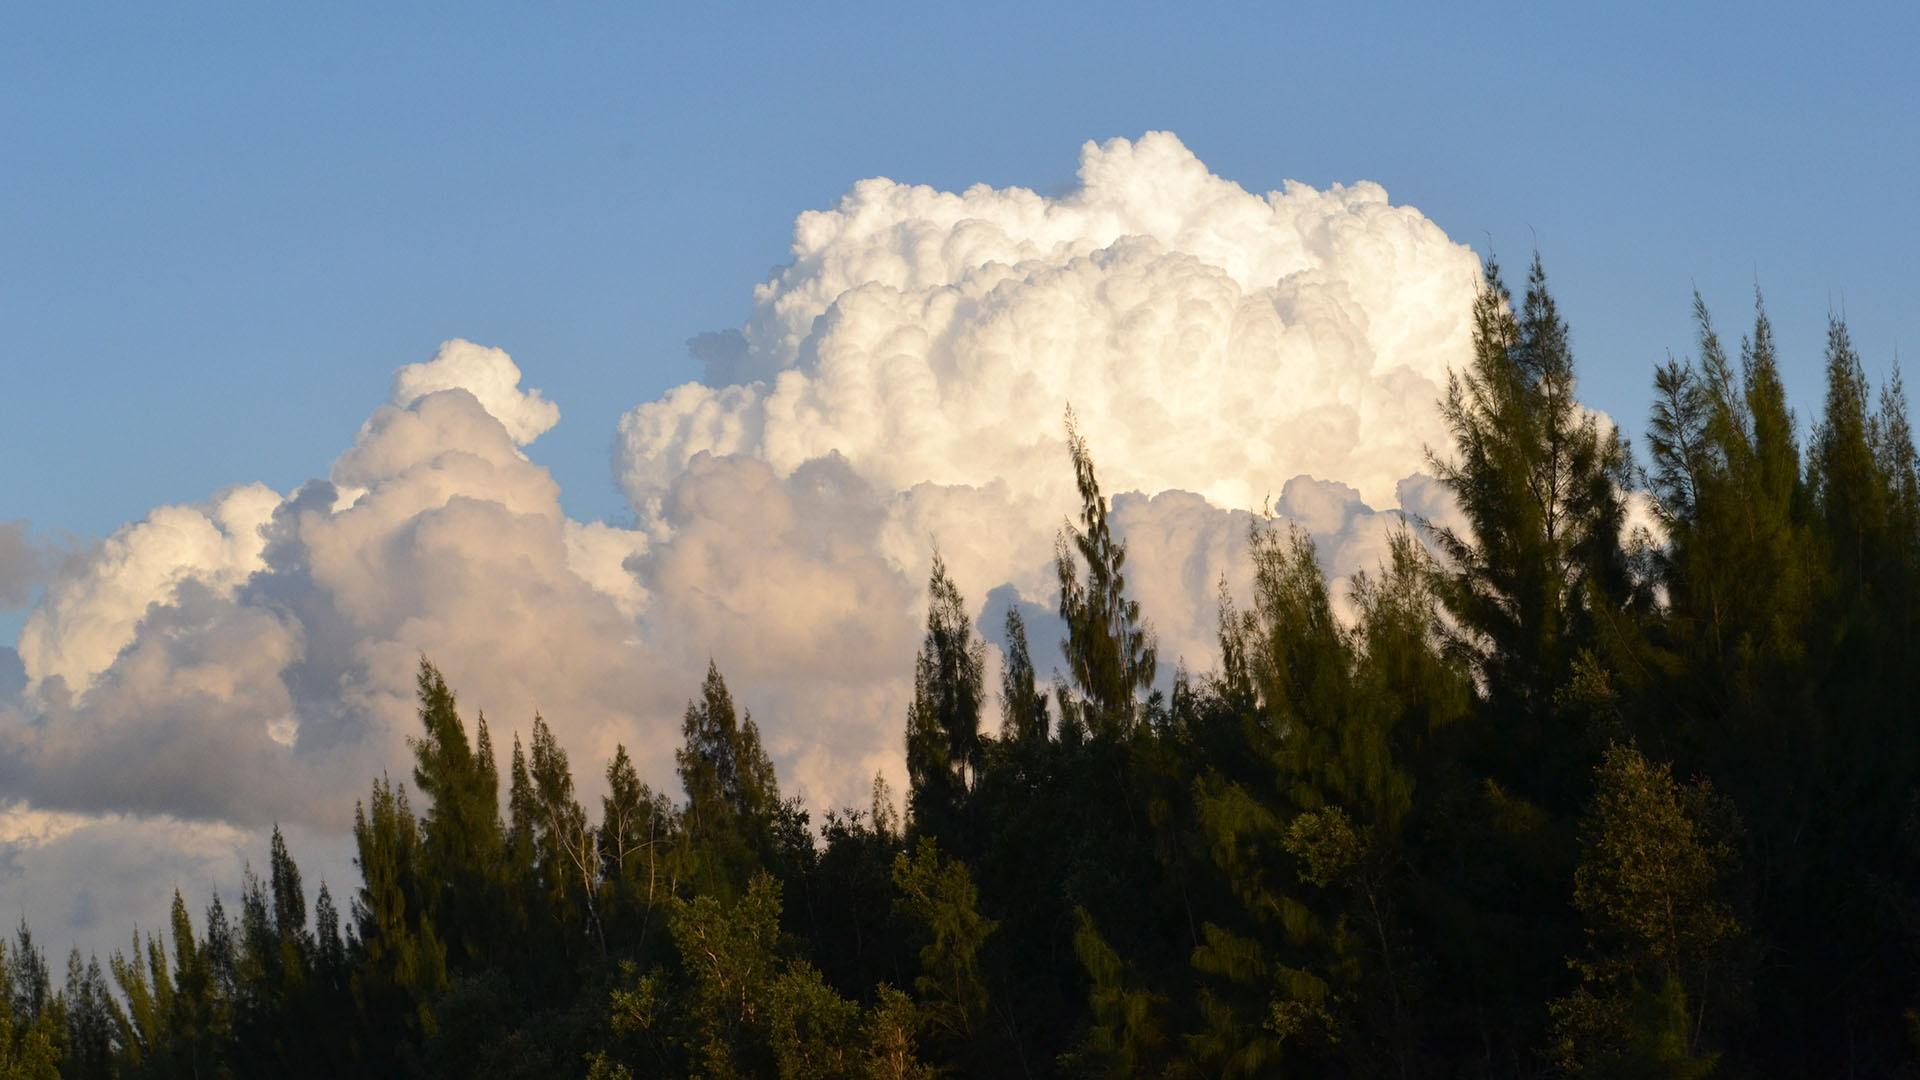 Cloud in Florida, USA.